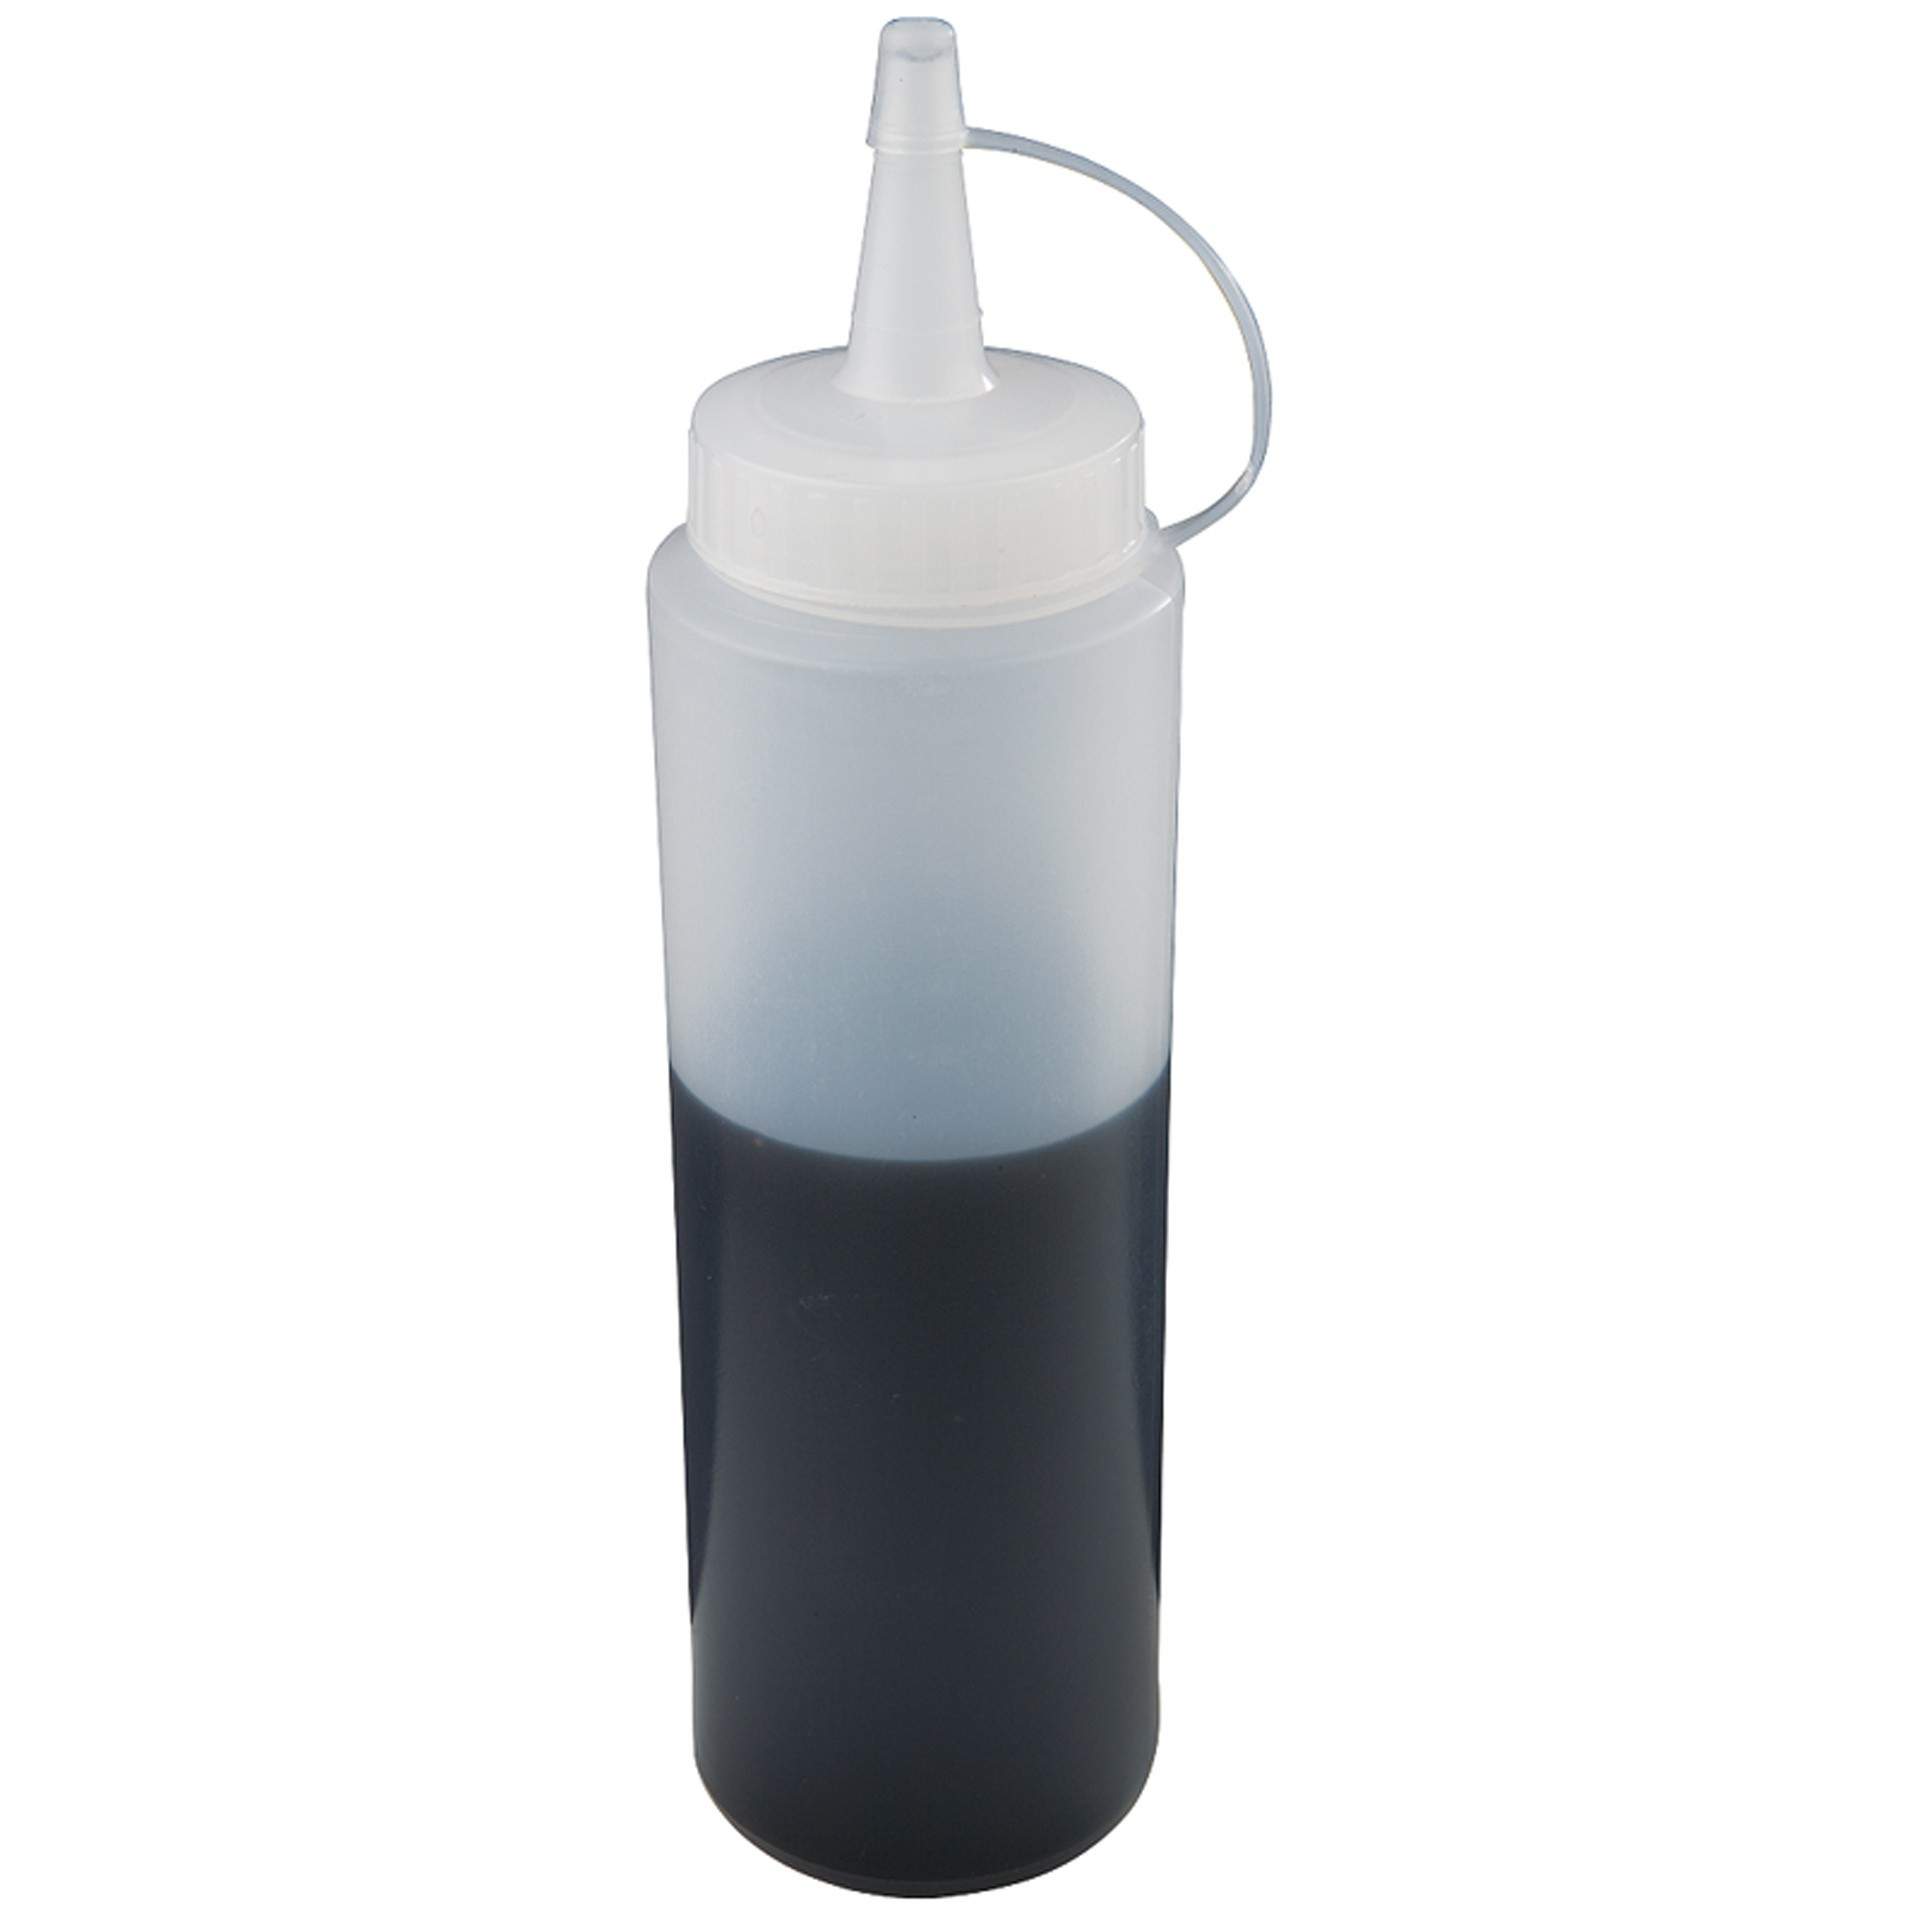 Quetschflasche - zum Verzieren - transparent - Abm. 19,0 cm - Ø 5,5 cm - Inhalt 0,35 l - Polyethylen - 93163-B